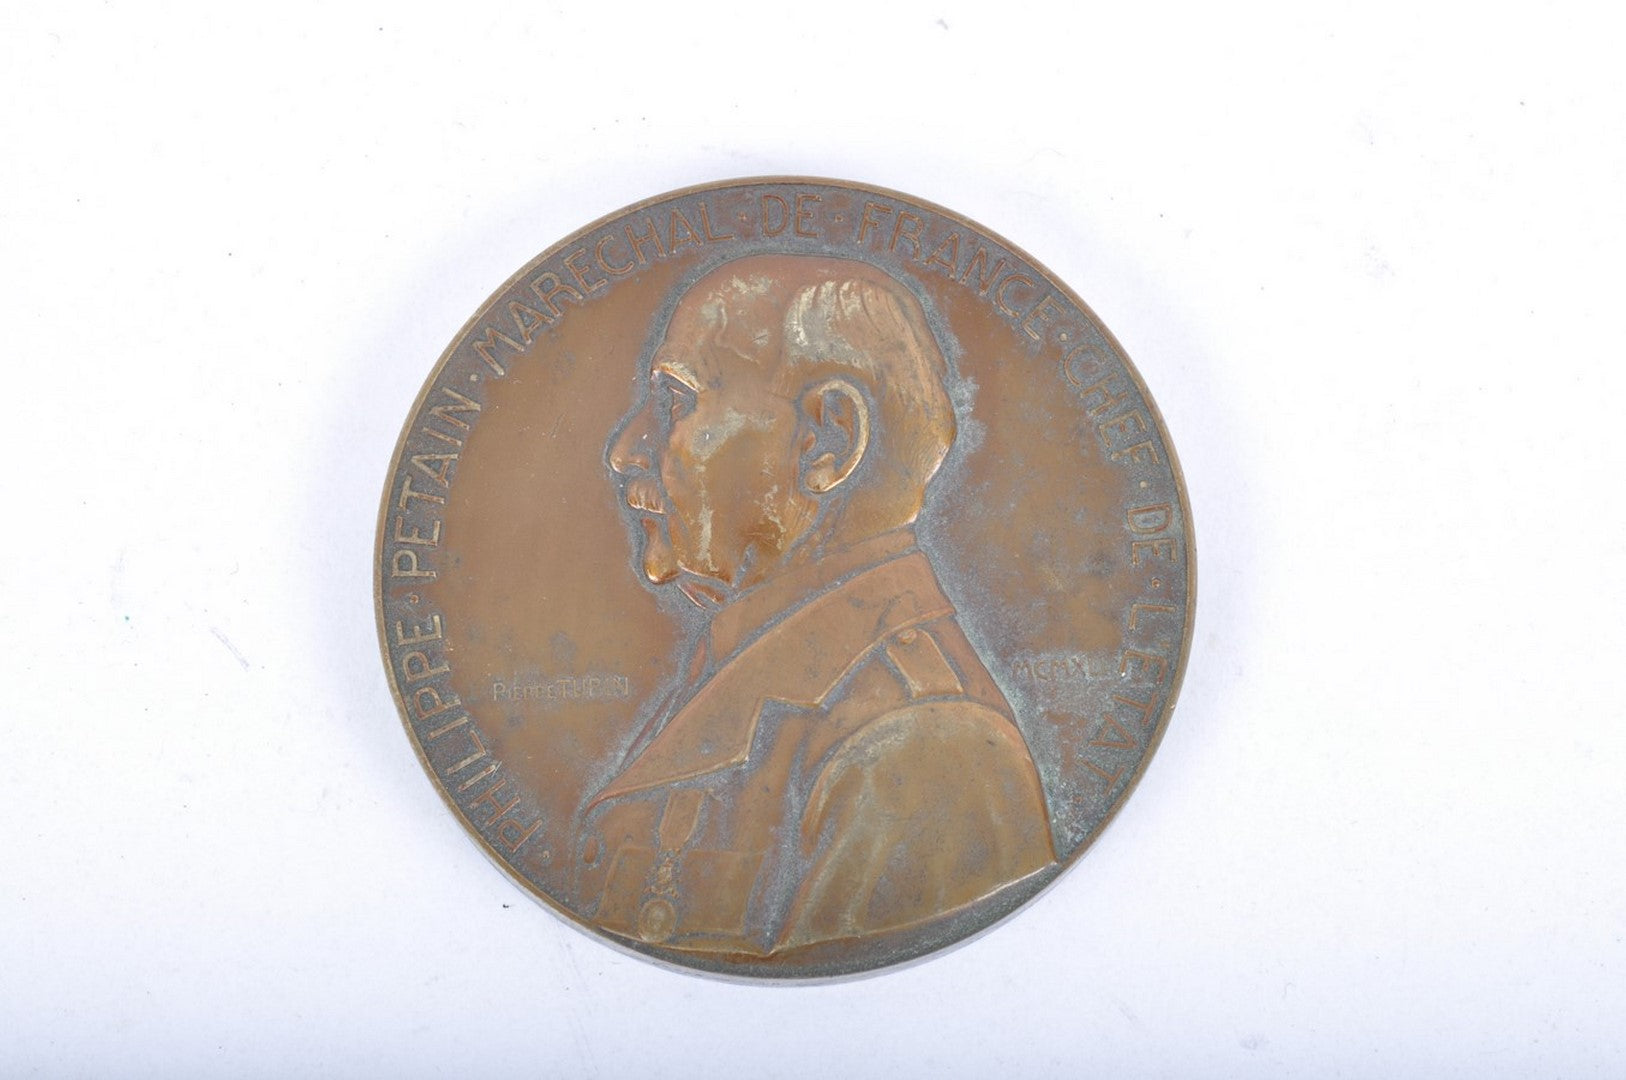 Médaille " Fête du Travail Maréchal Pétain 1943 " signée TURIN